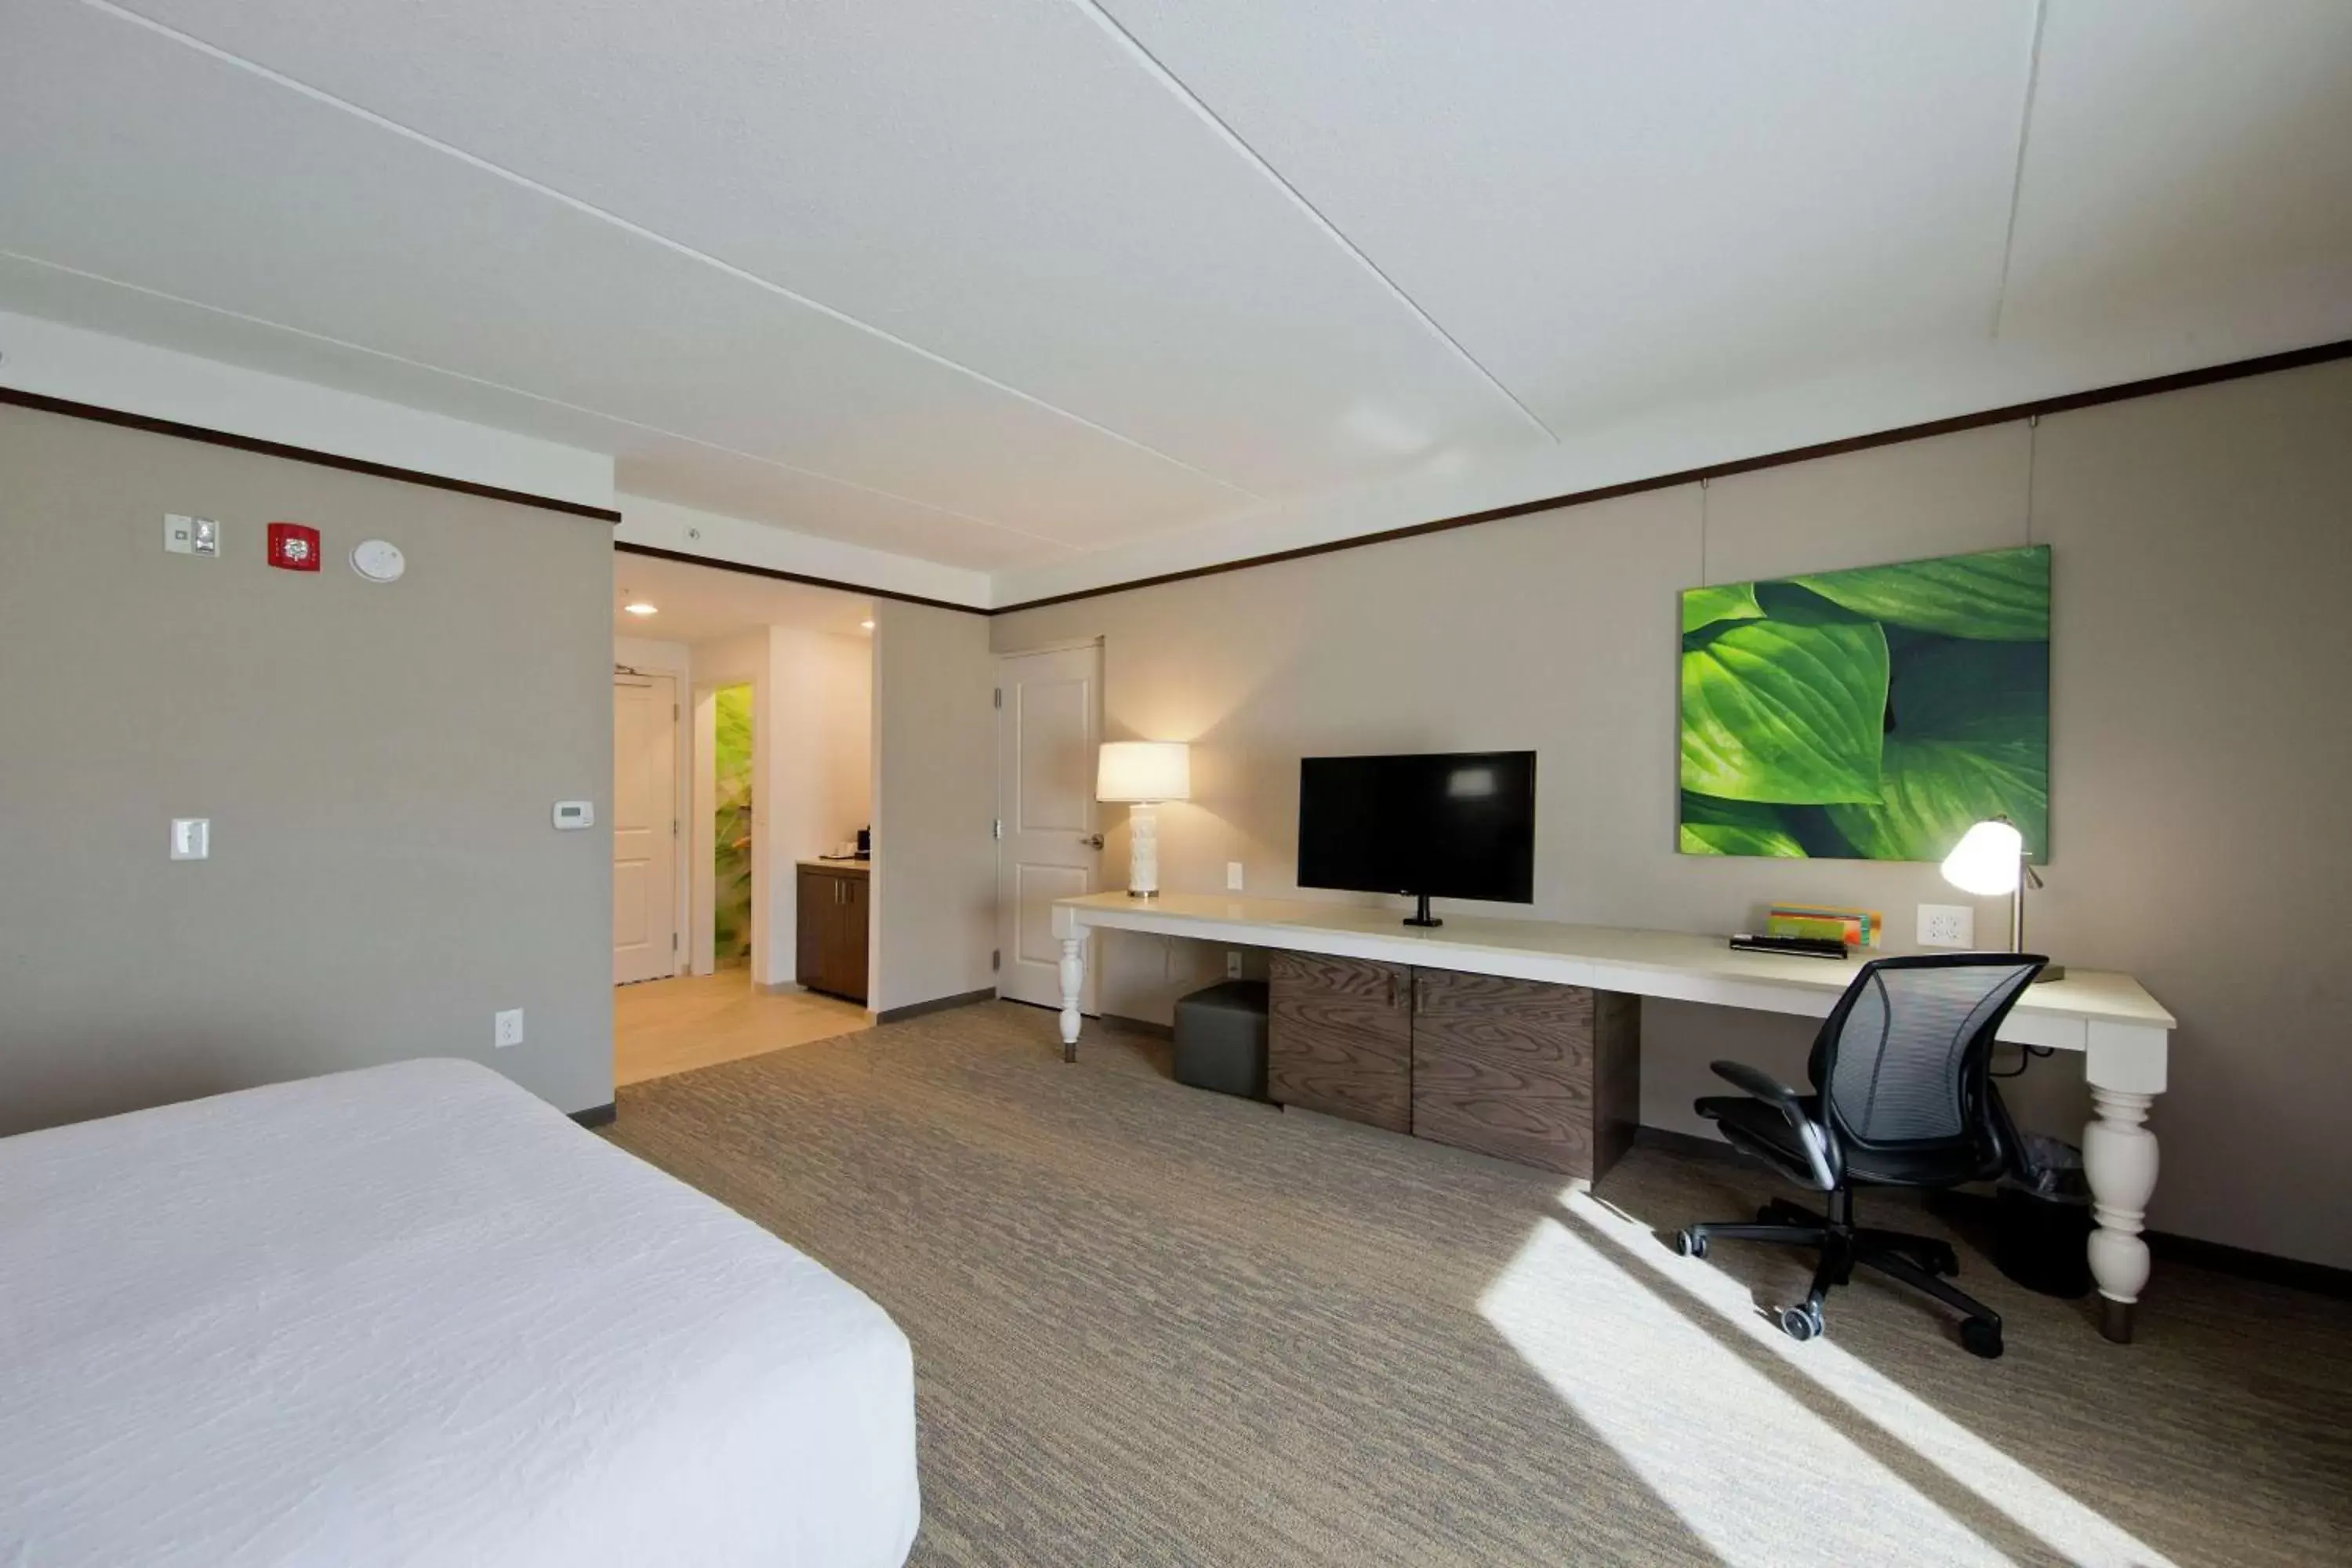 Bedroom, TV/Entertainment Center in Hilton Garden Inn Martinsburg